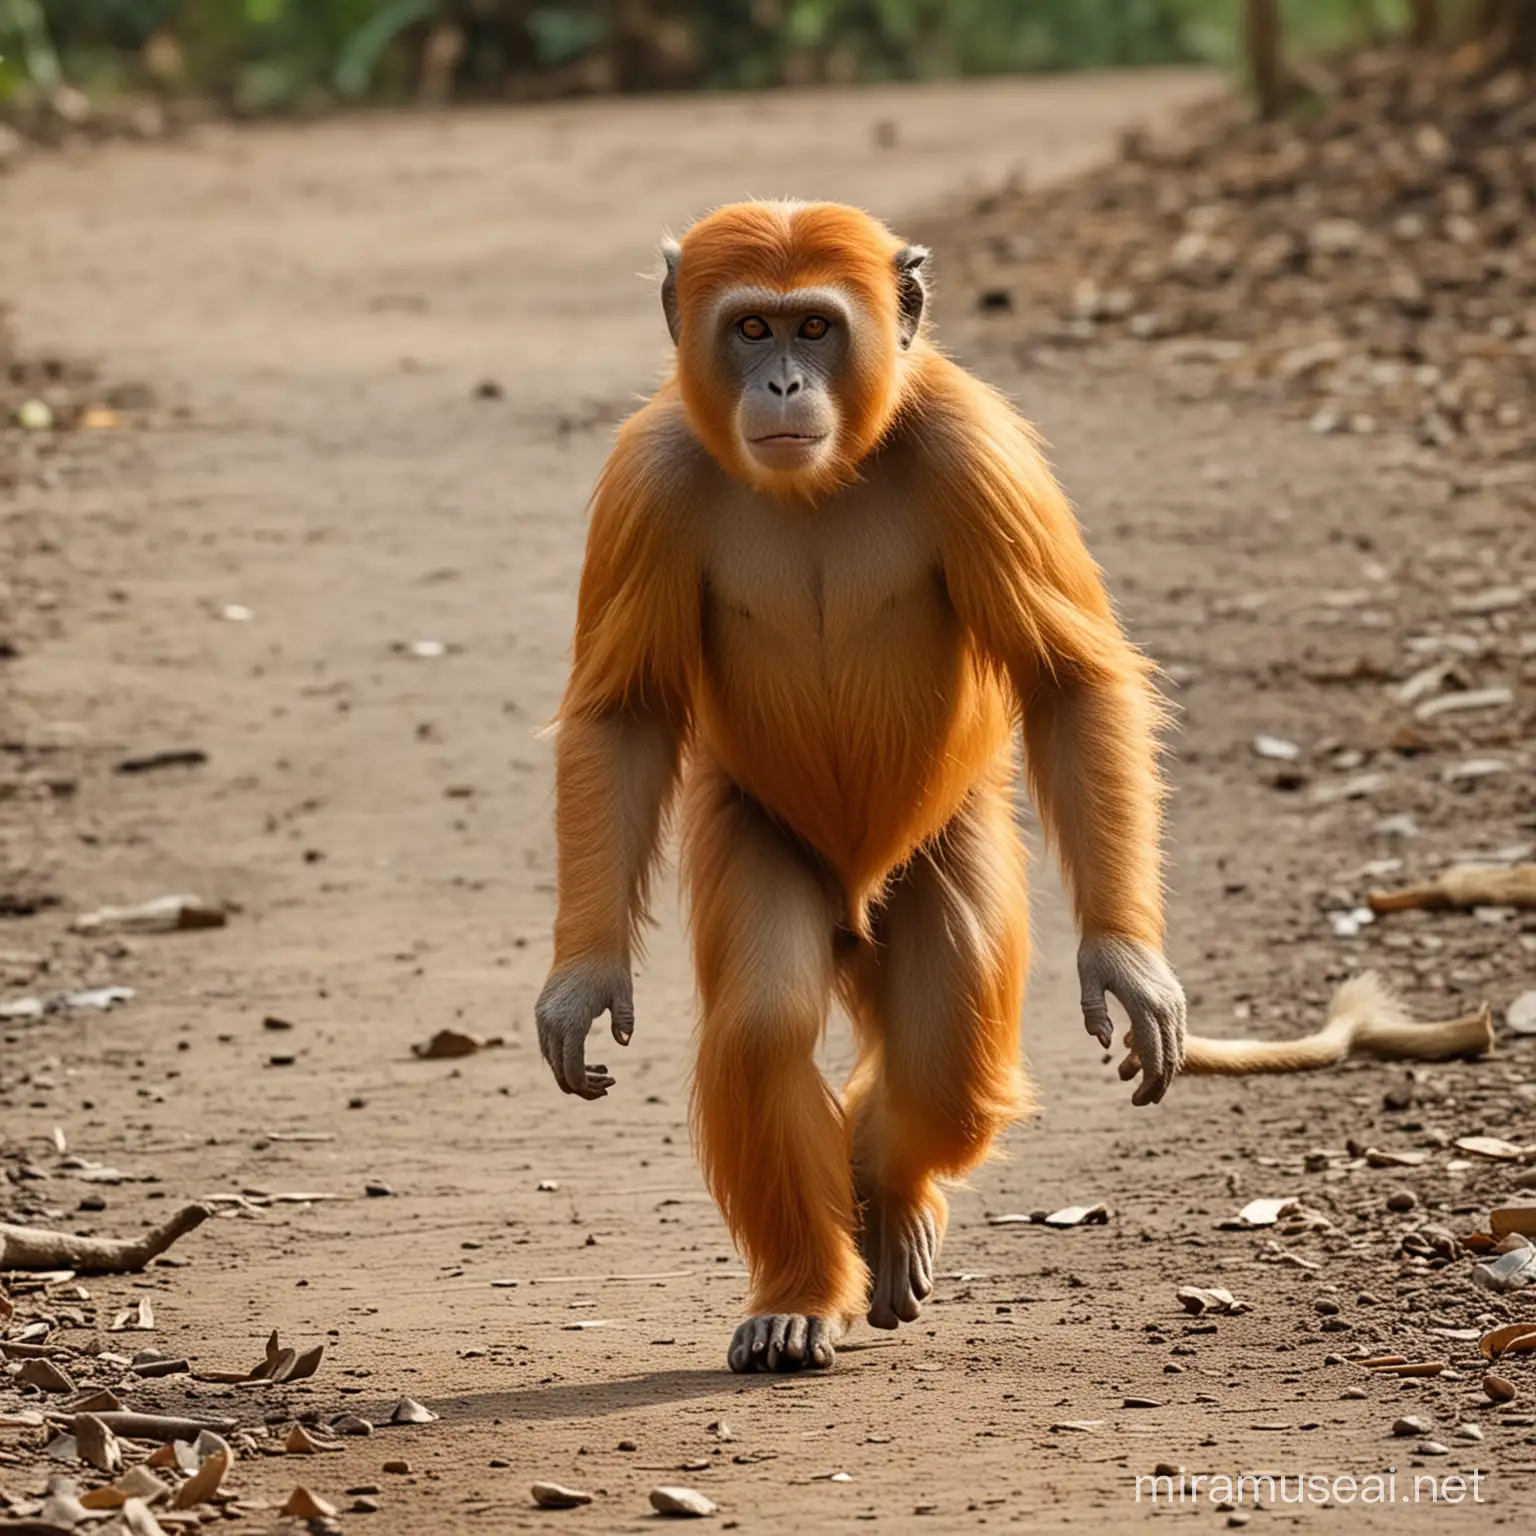 orang uthan monkey running away on 4 feet
